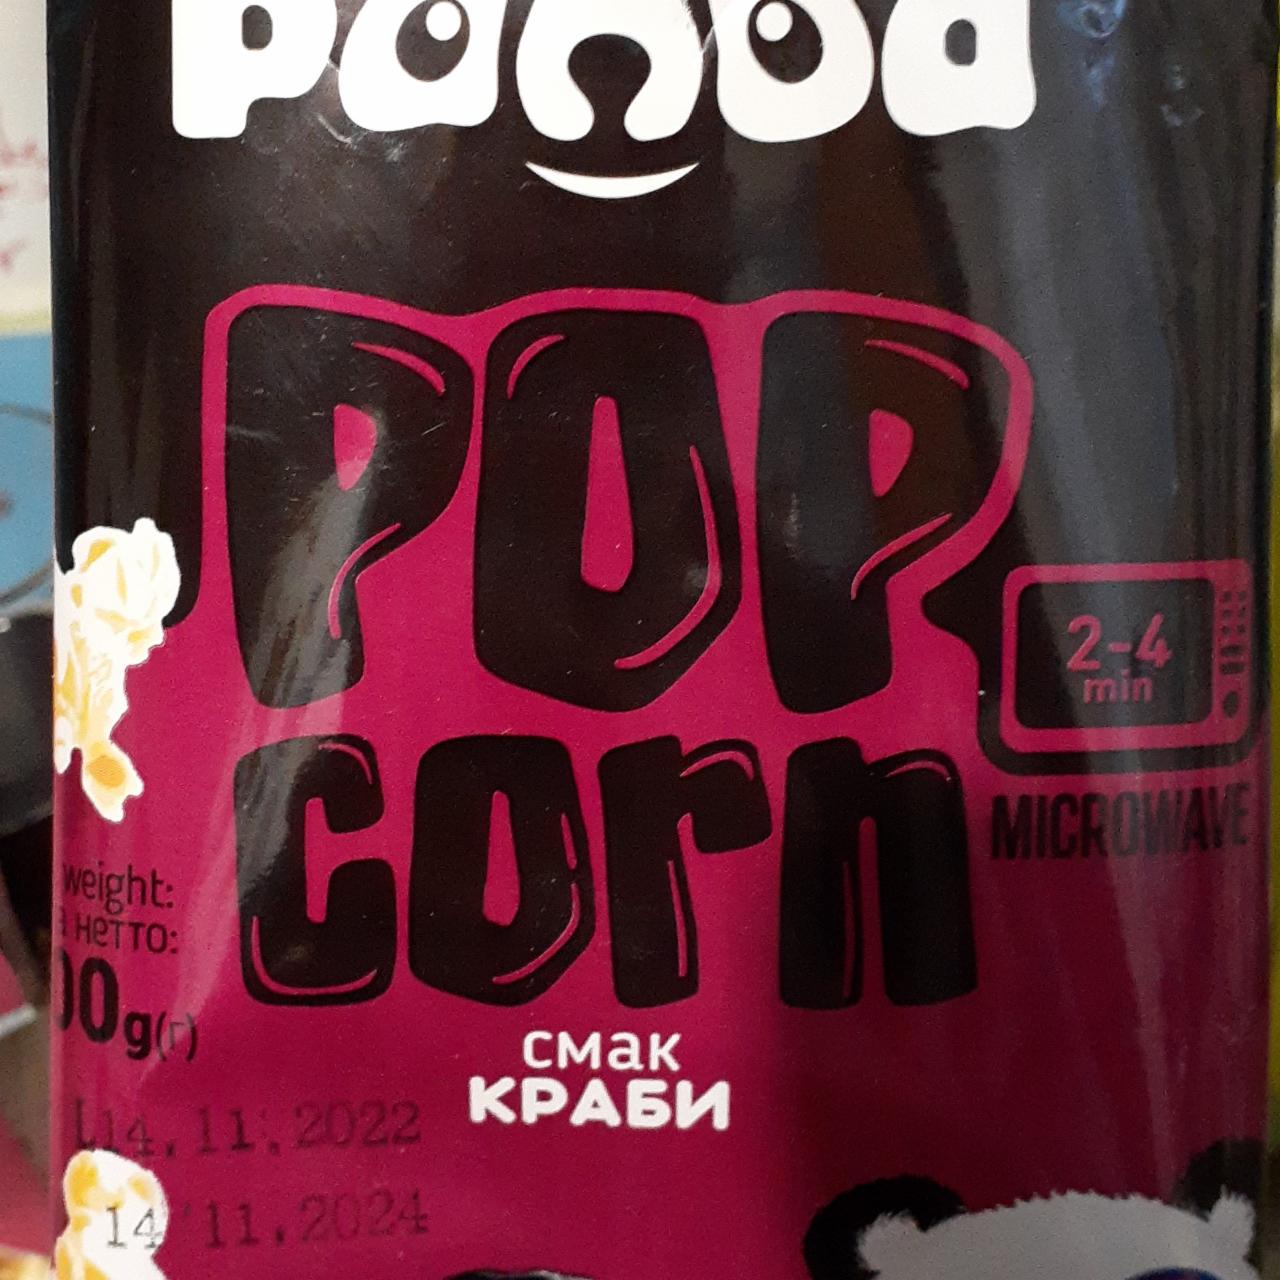 Фото - Кукуруза для приготовления попкорна в микроволновке со вкусом крабов The Panda